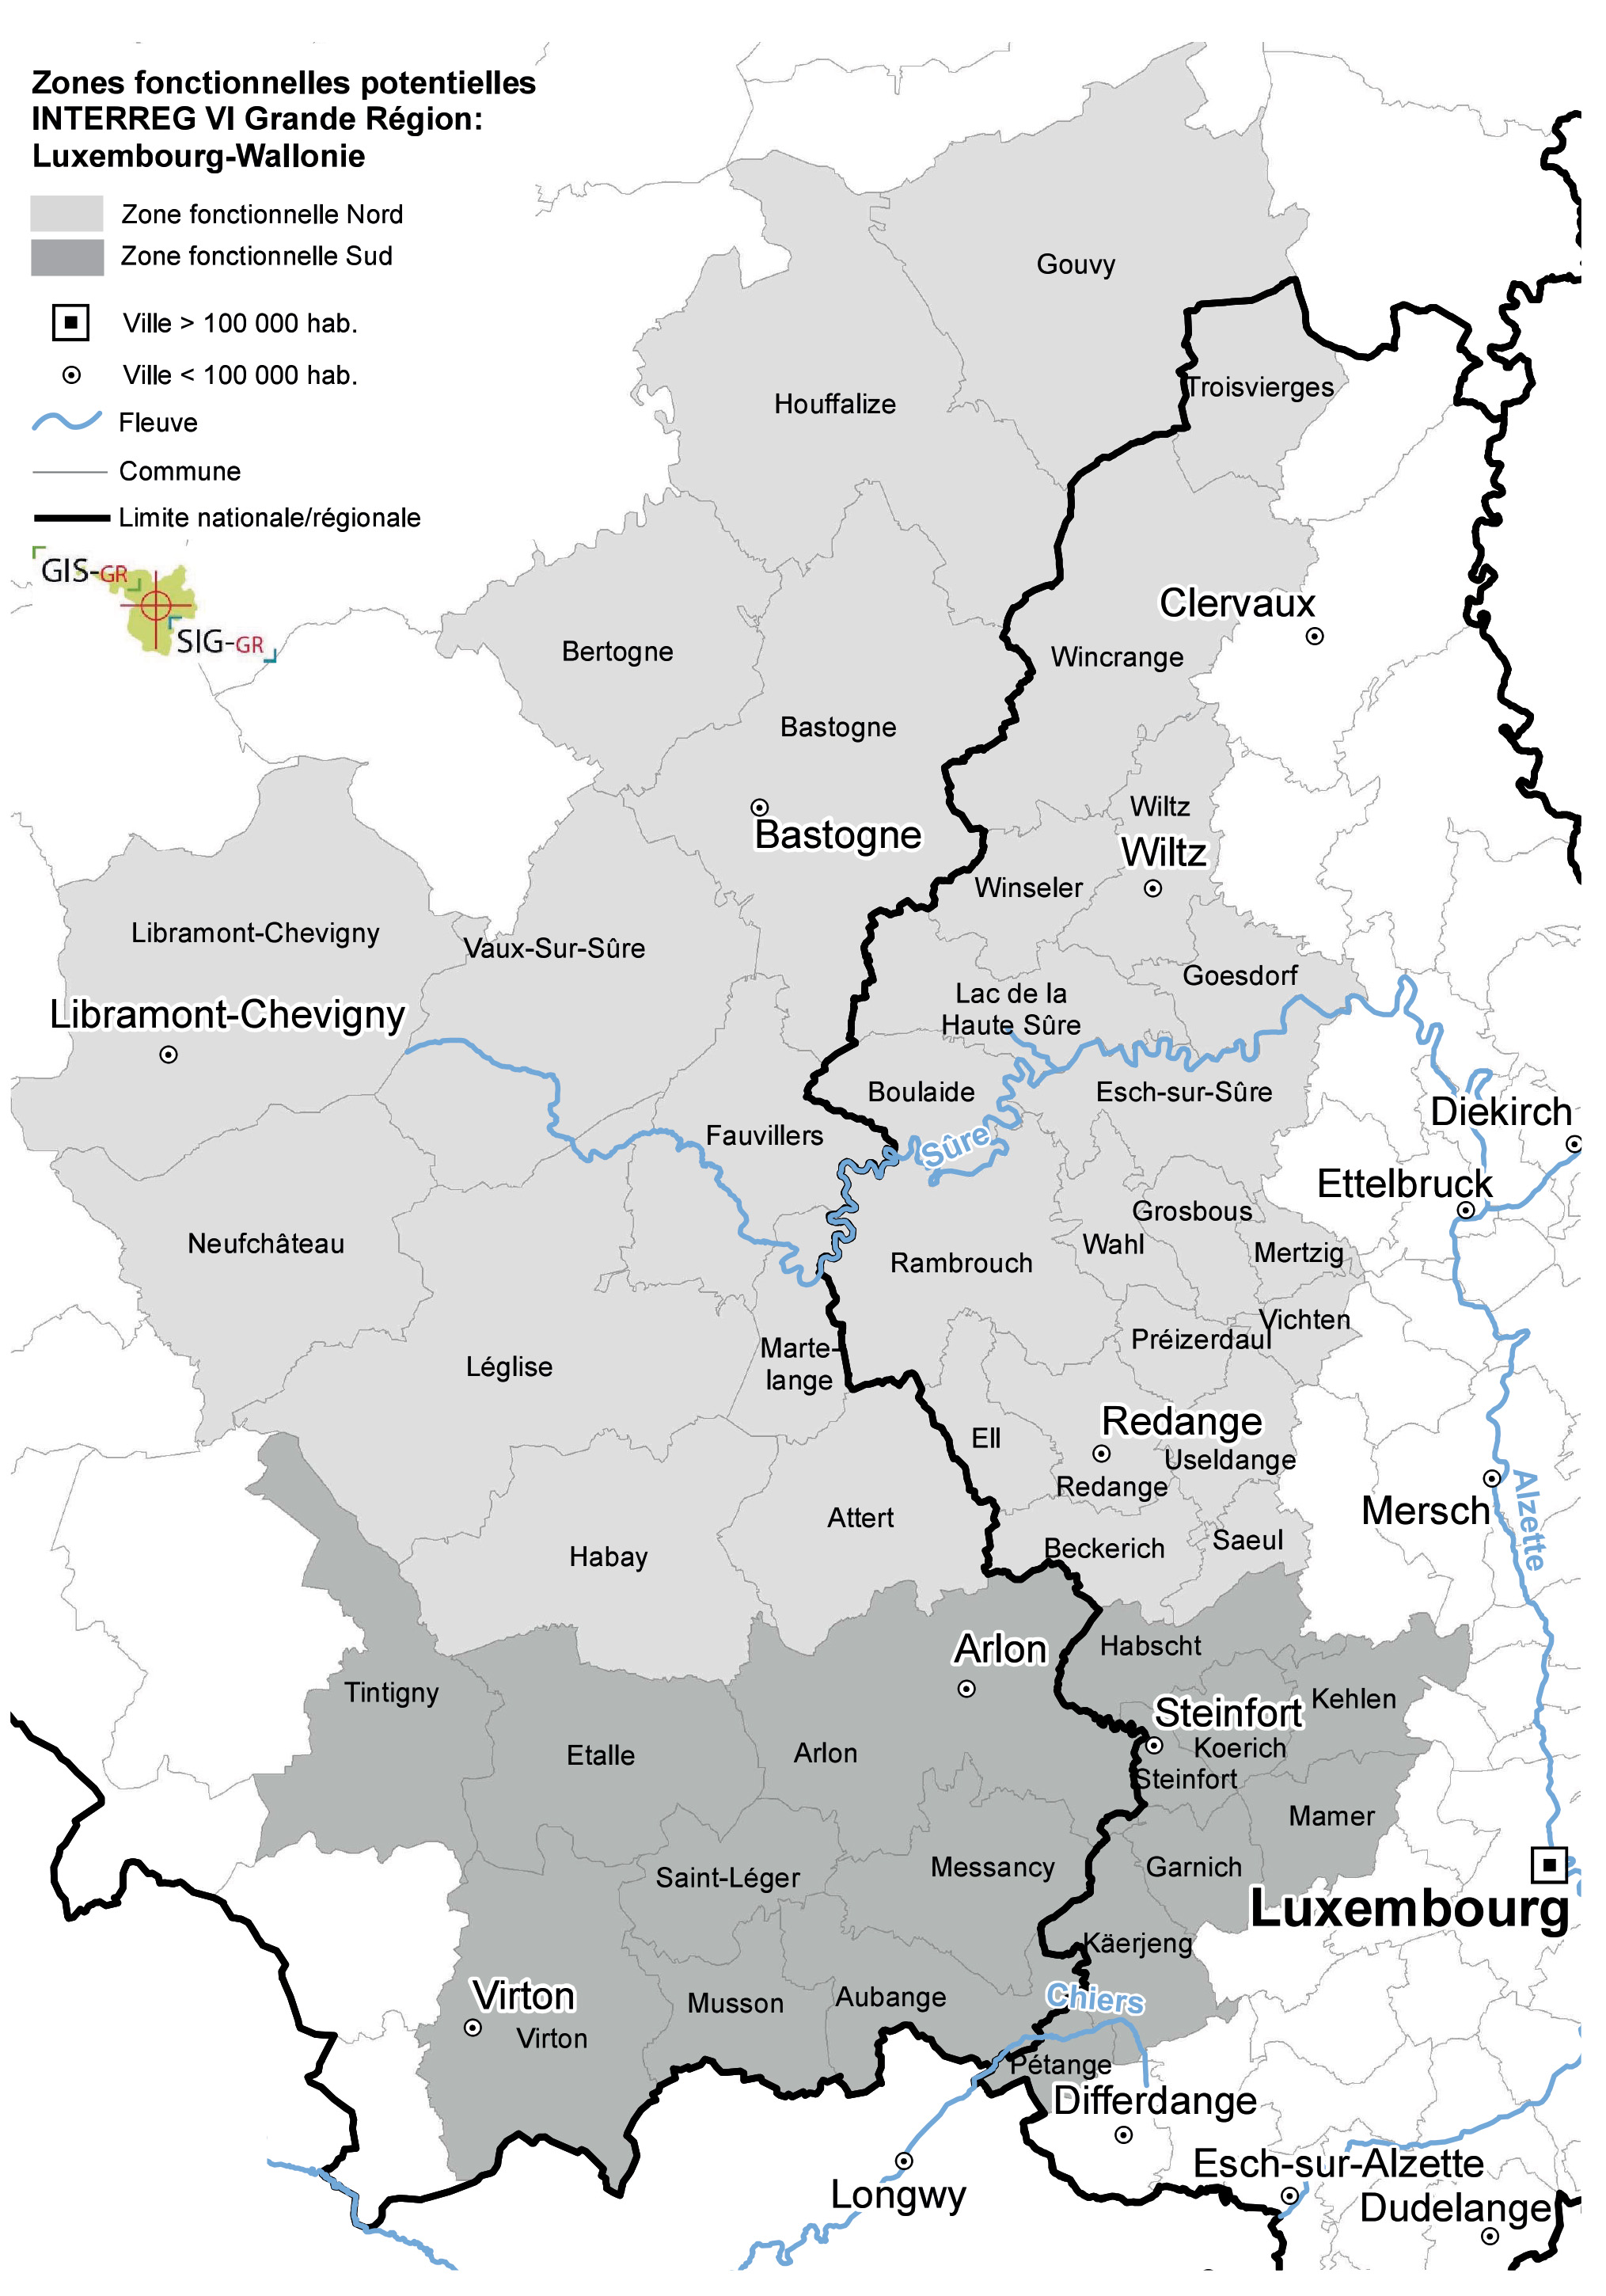 Zones fonctionnelles transfrontalières Luxembourg-Wallonie (carte)